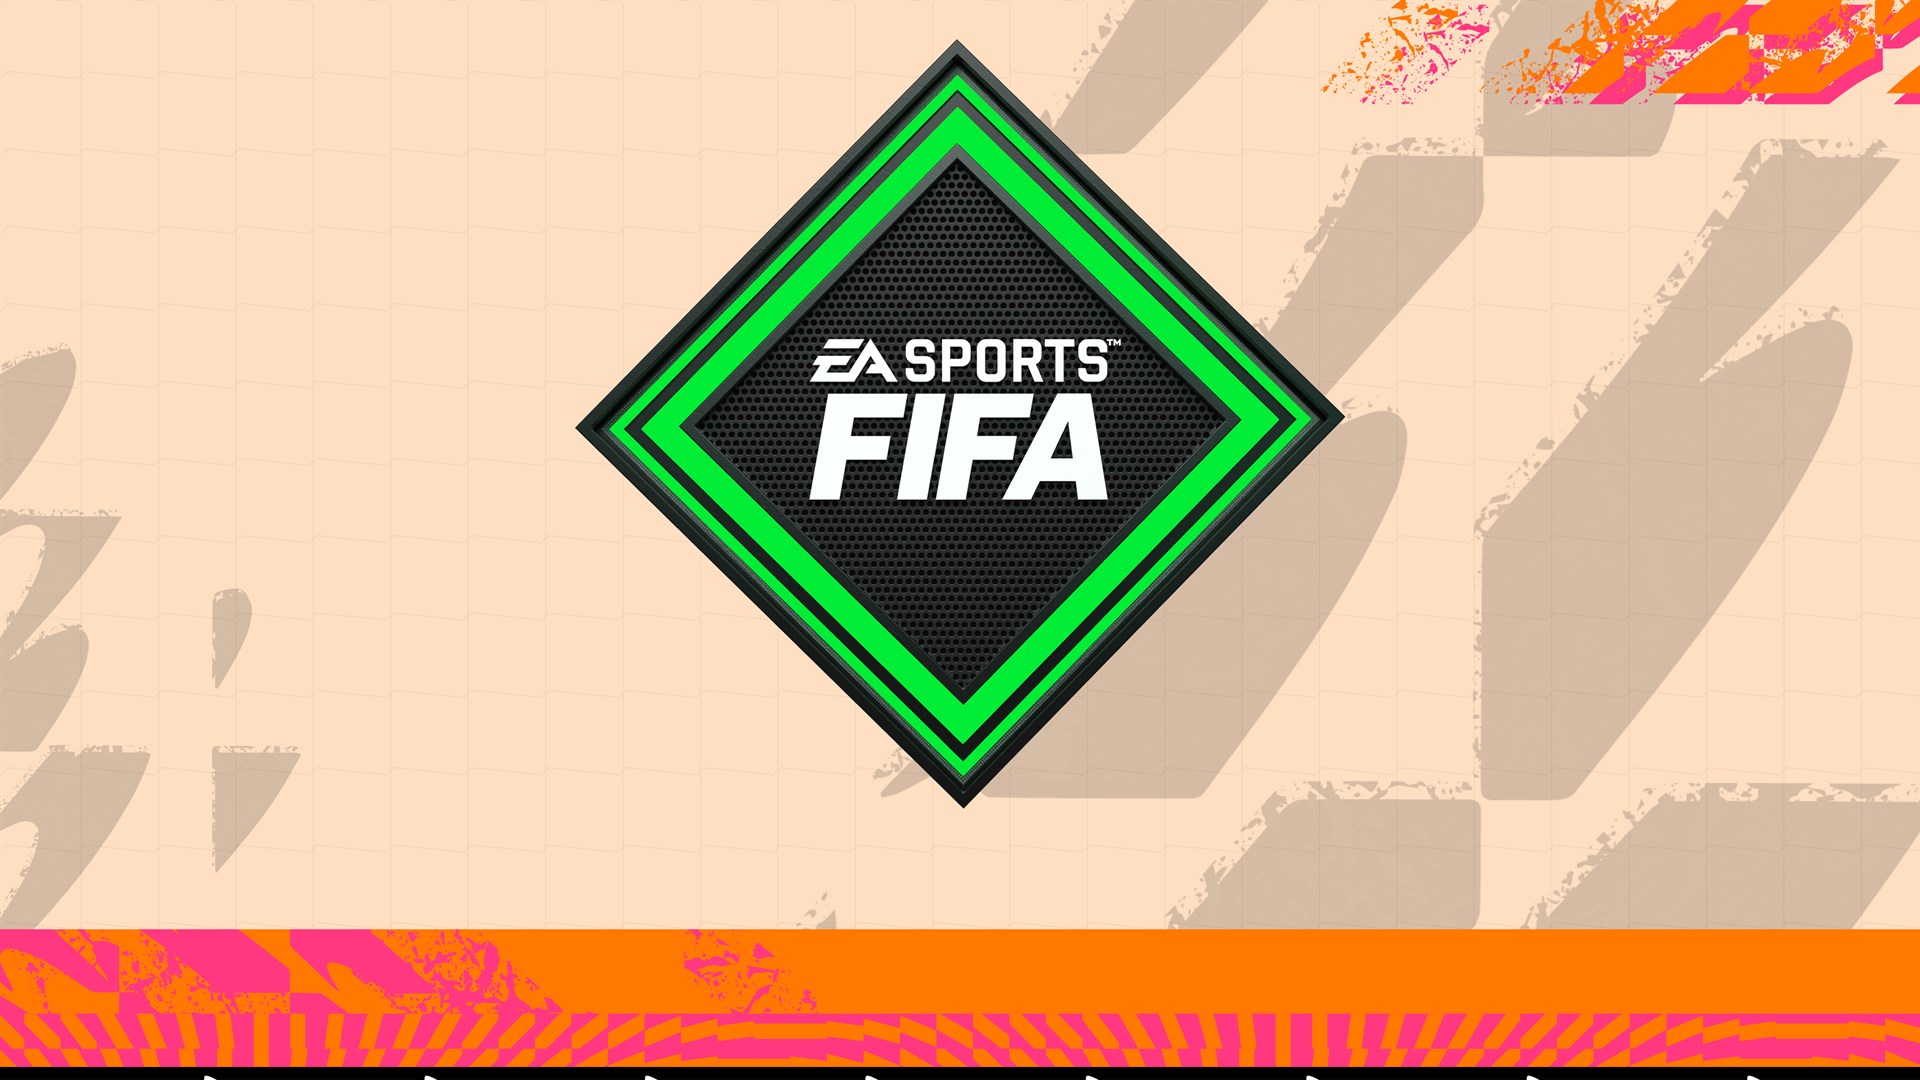 FUT 22 – FIFA Points 250